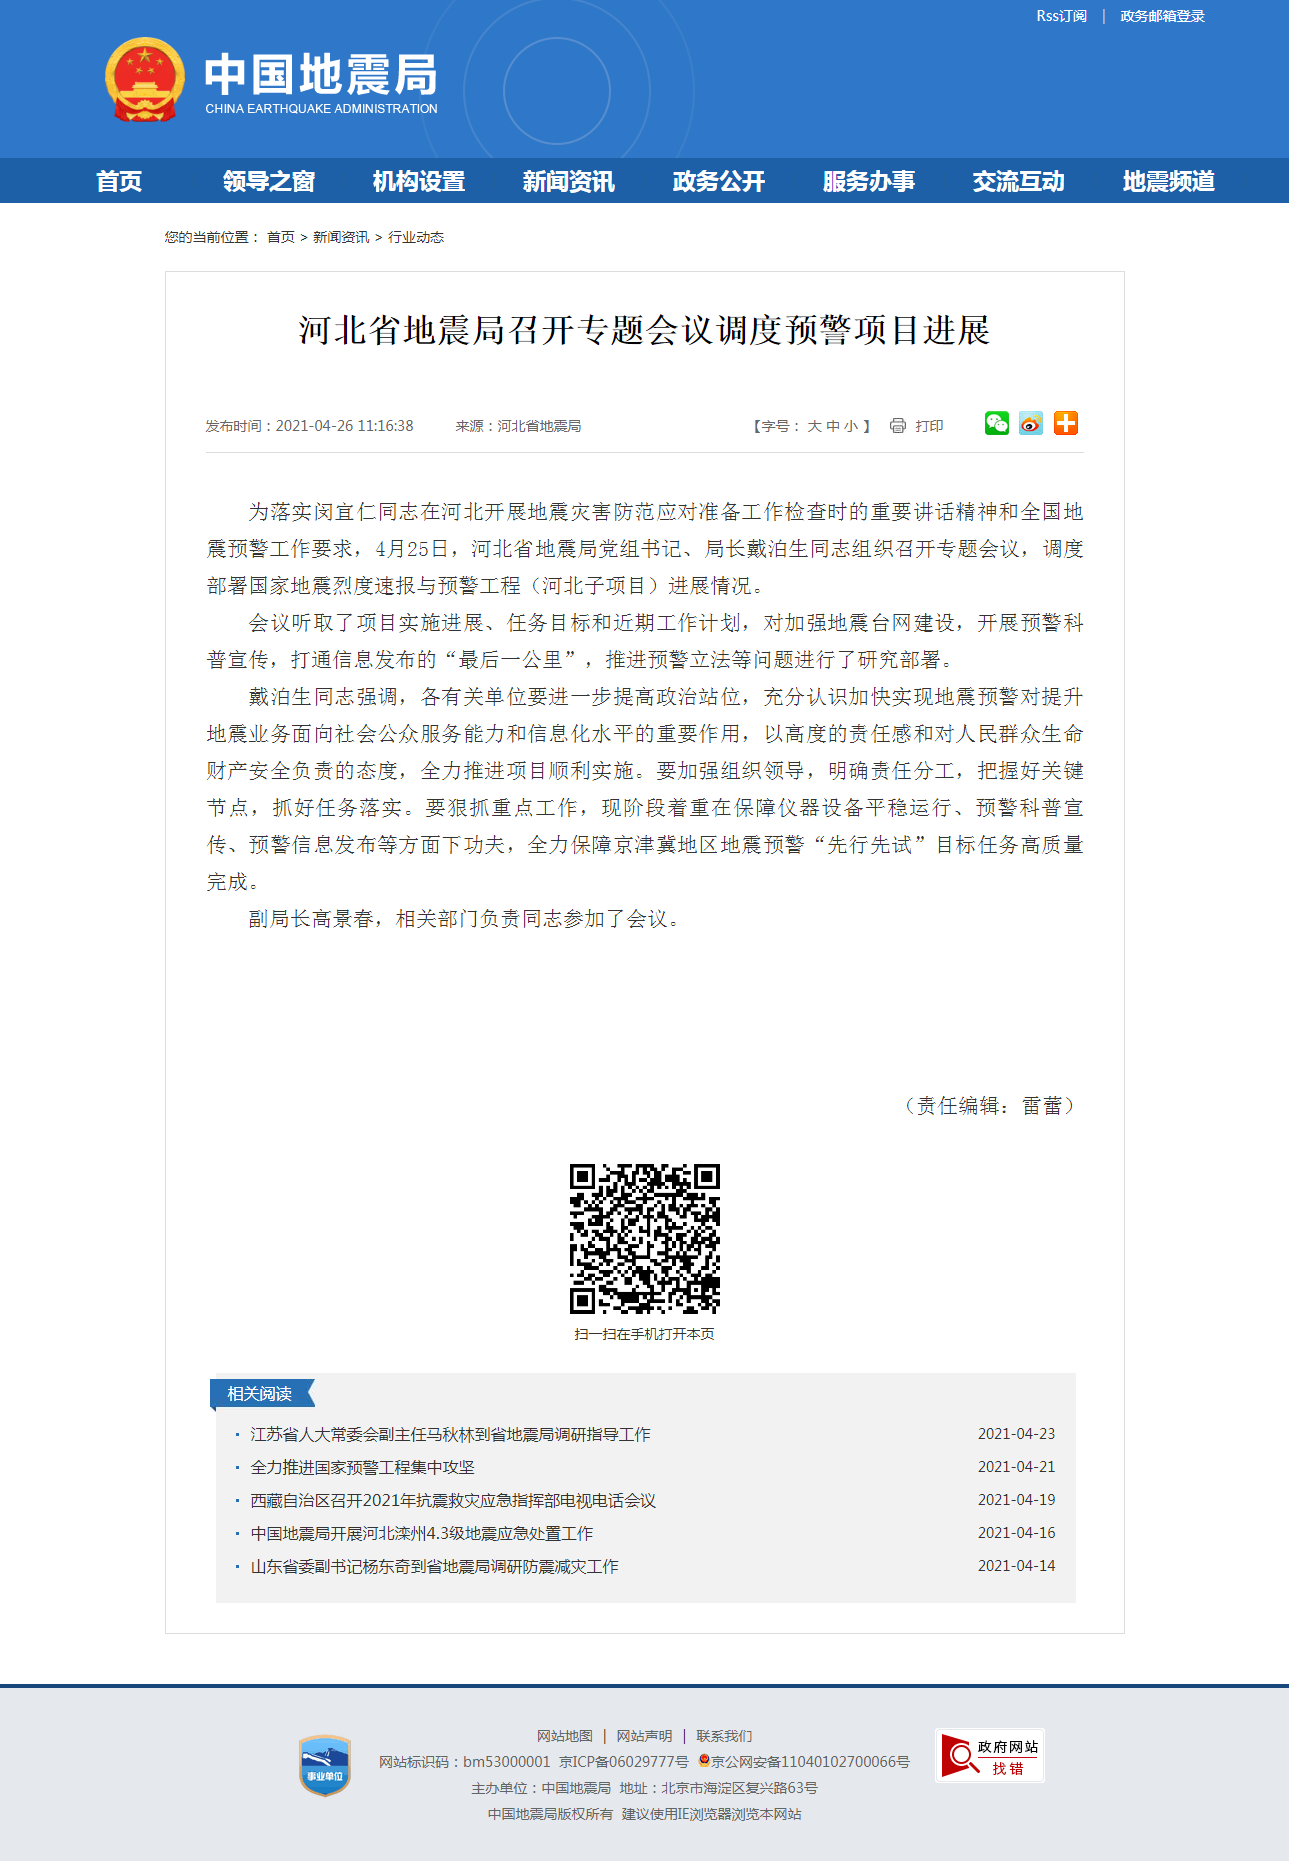 河北省地震局召开专题会议调度预警项目进展.png